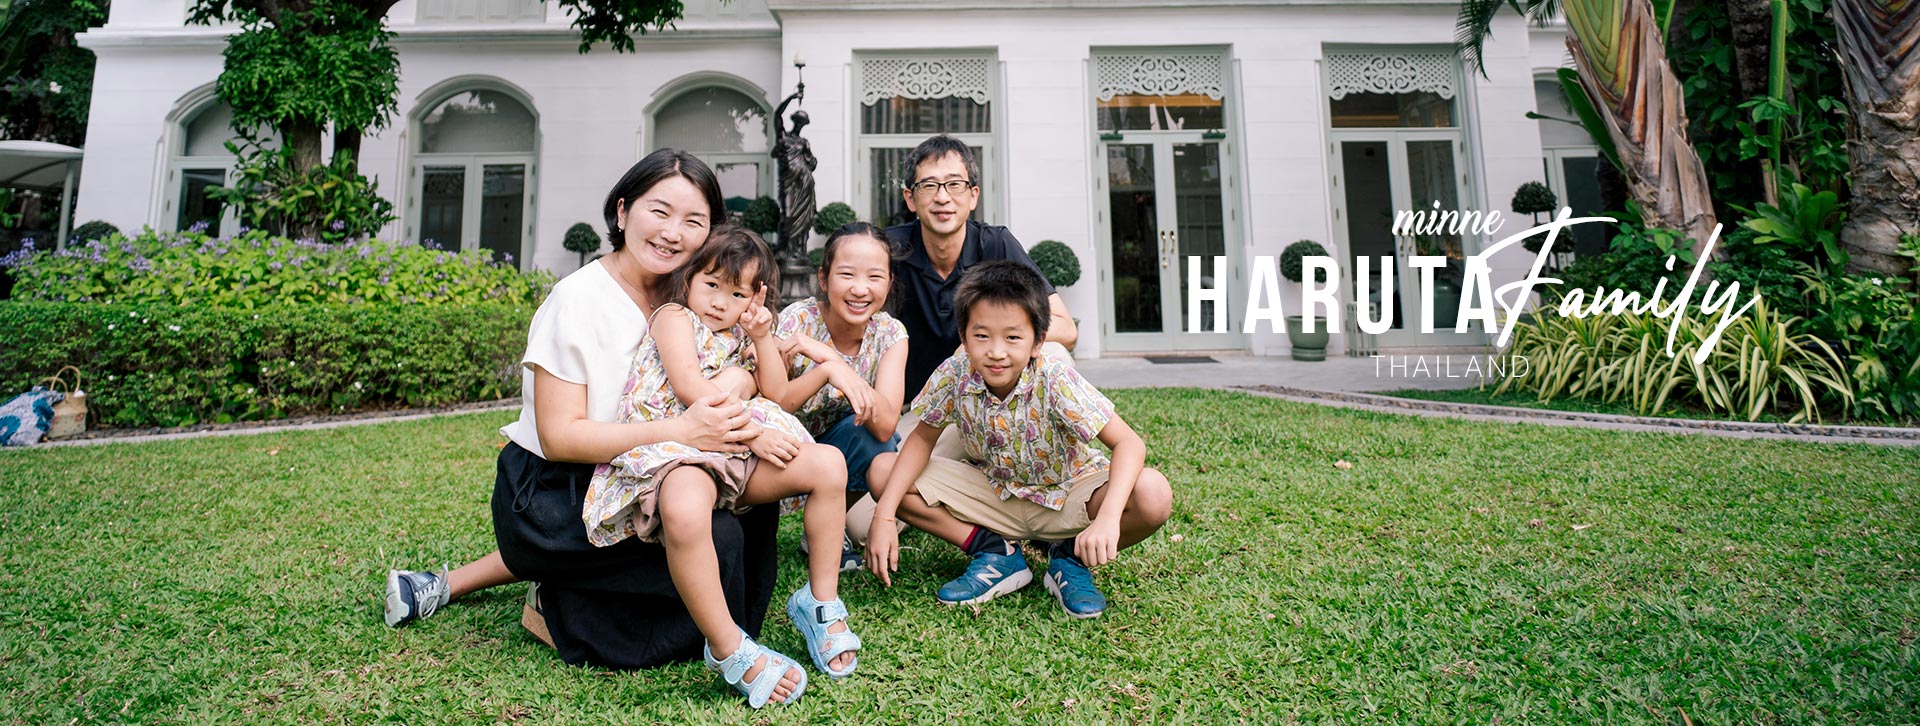 japanese family photos in bangkok thailand long cover